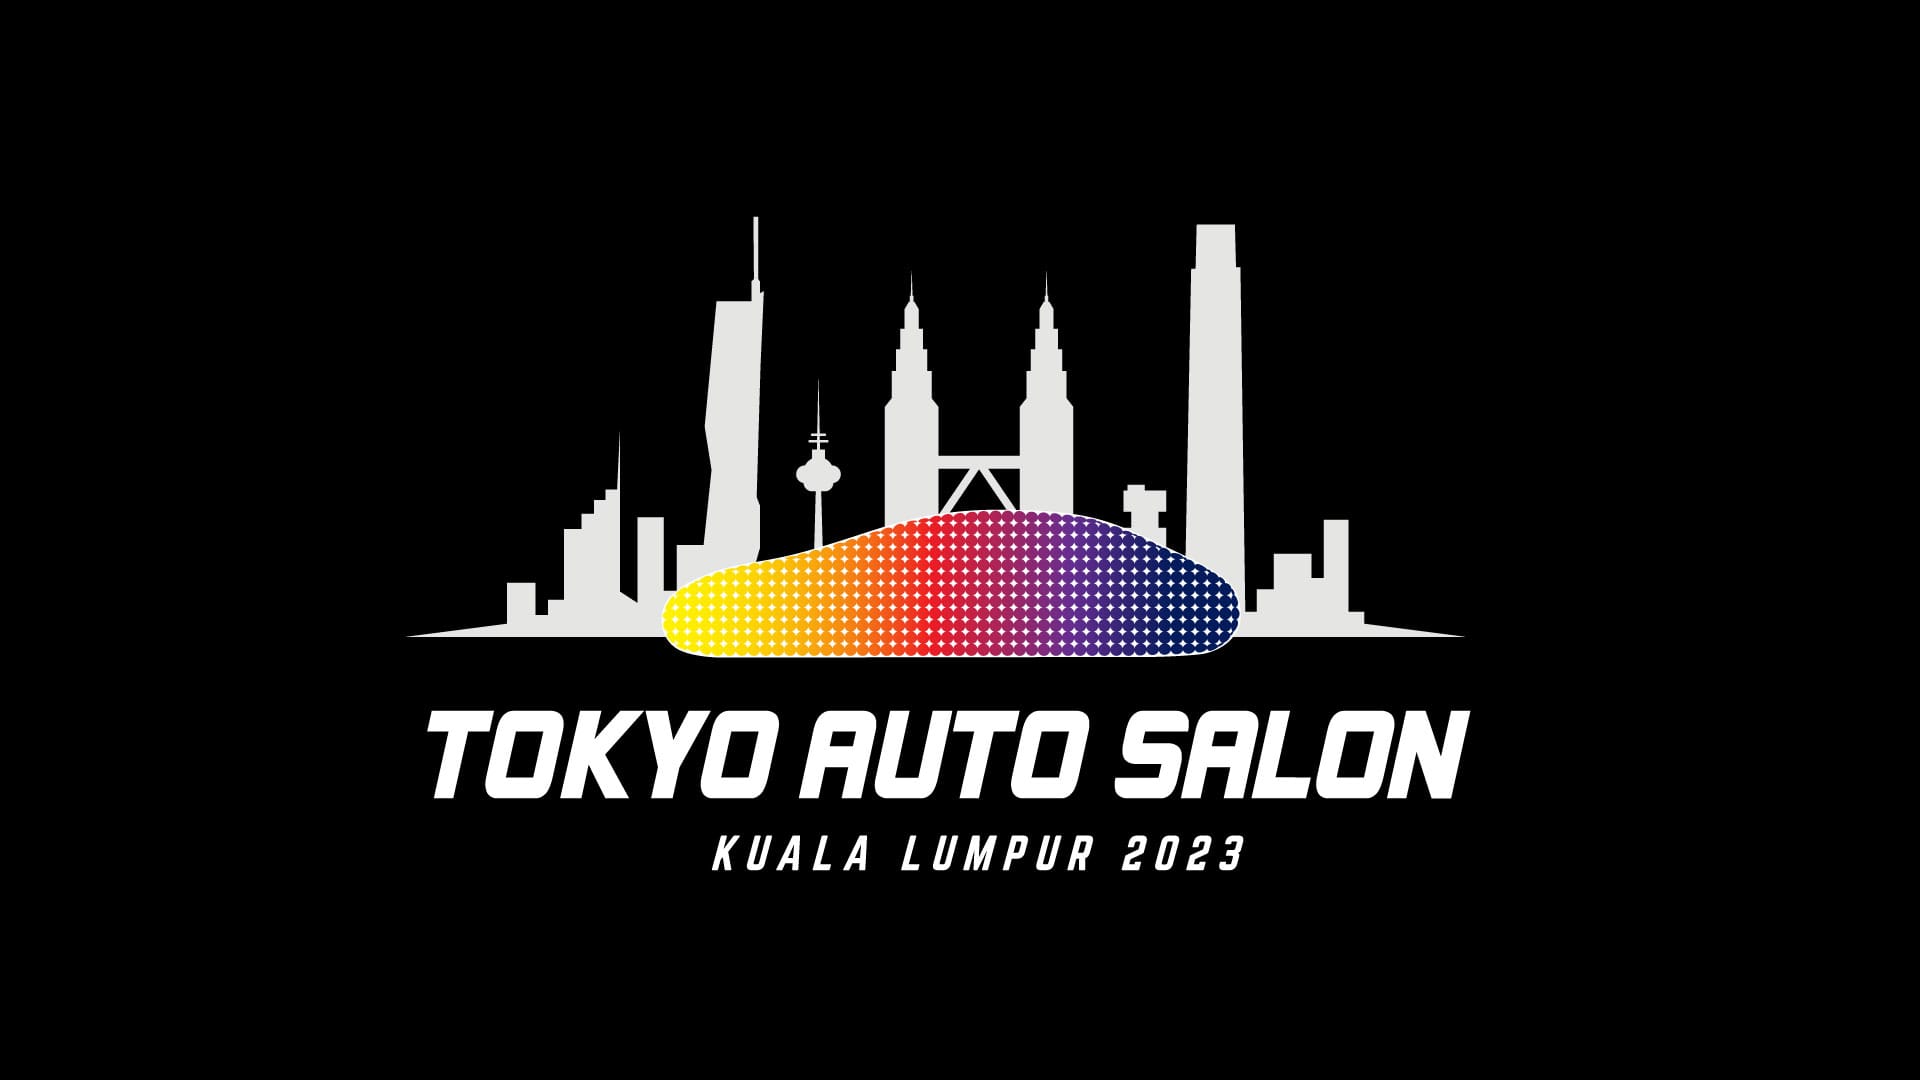 Tokyo Auto Salon KL 2023 – Tokyo Auto Salon Kuala Lumpur 2023